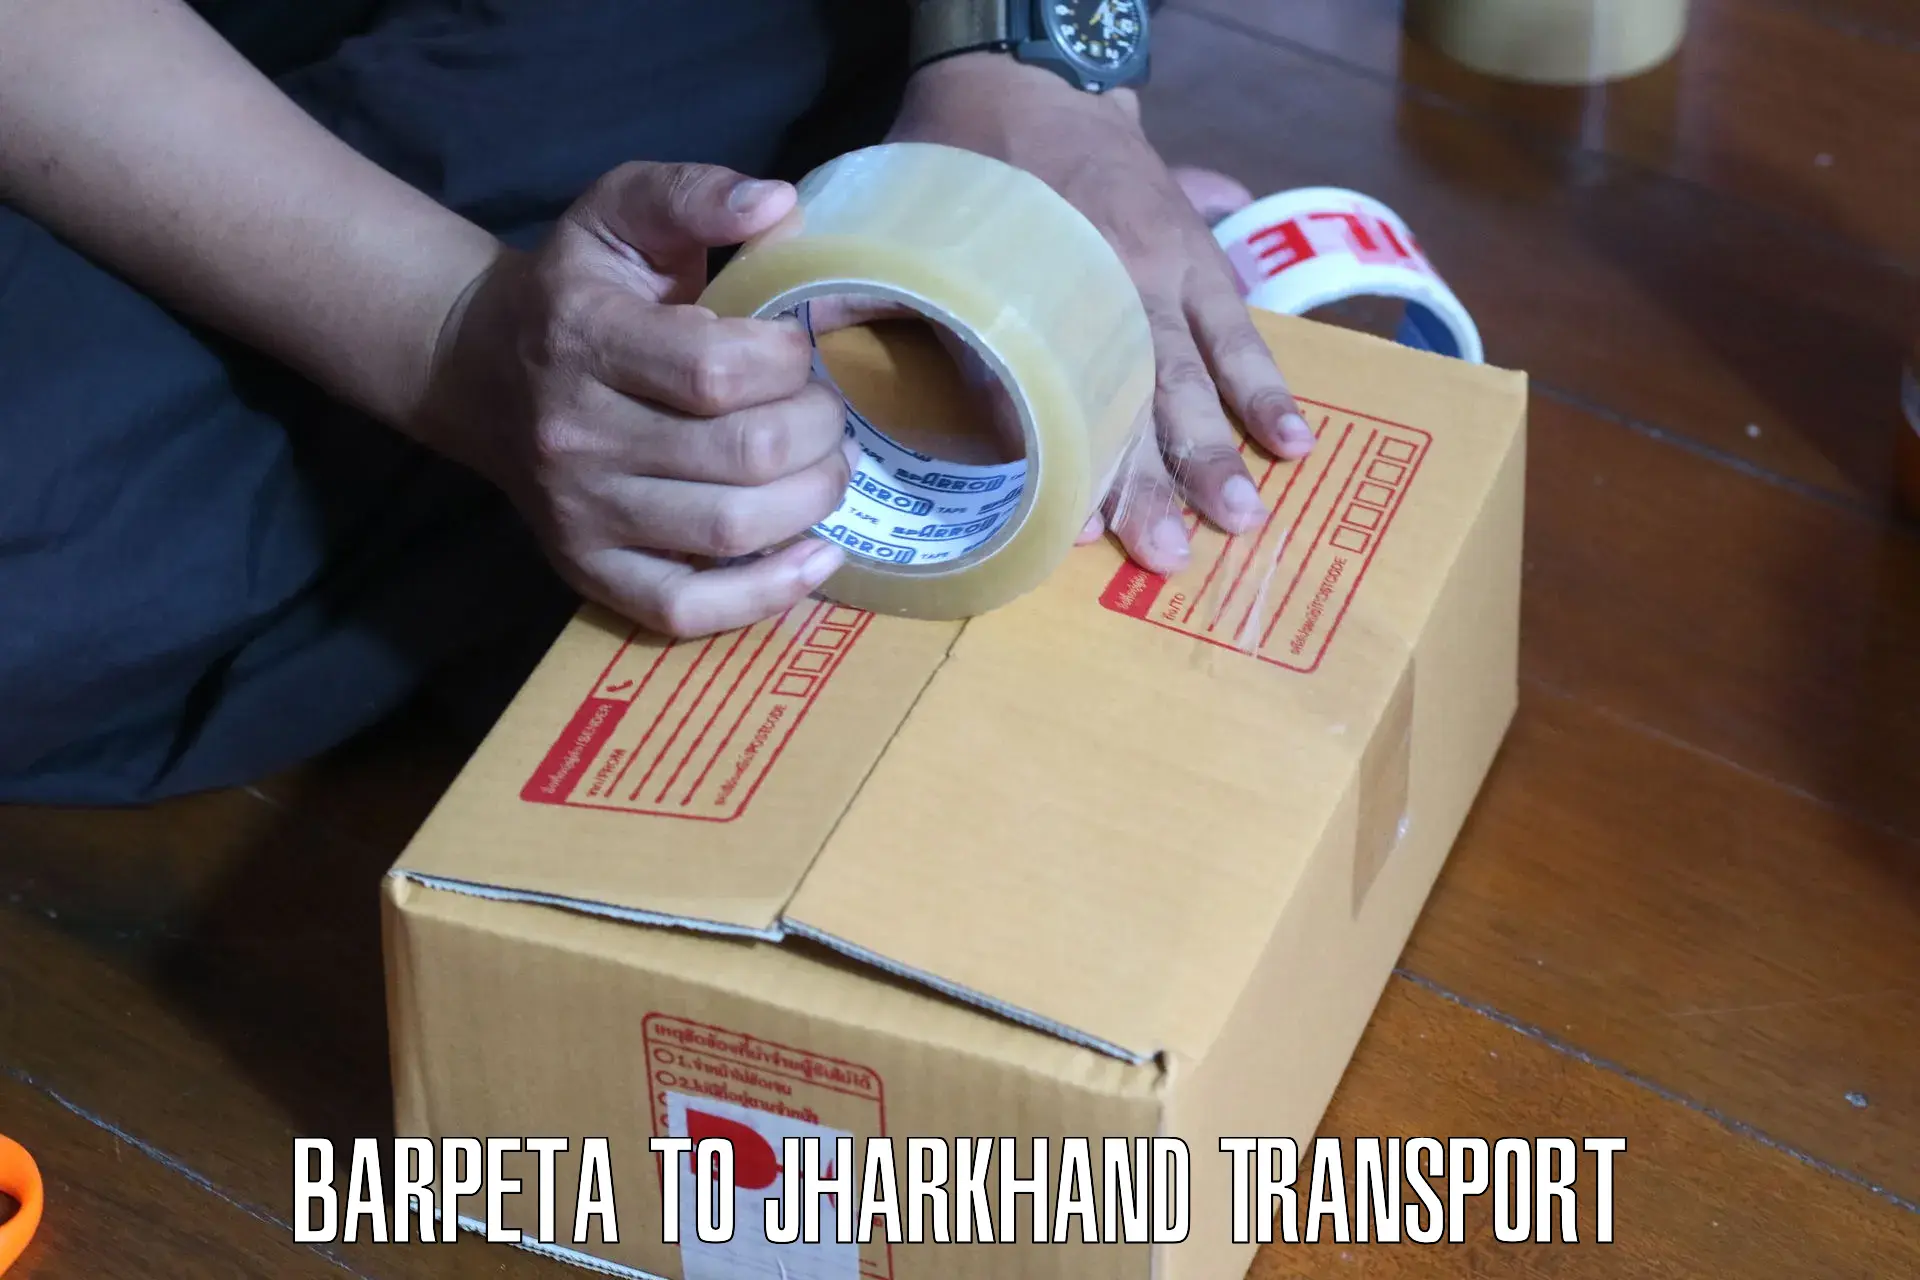 Furniture transport service Barpeta to Chandankiyari